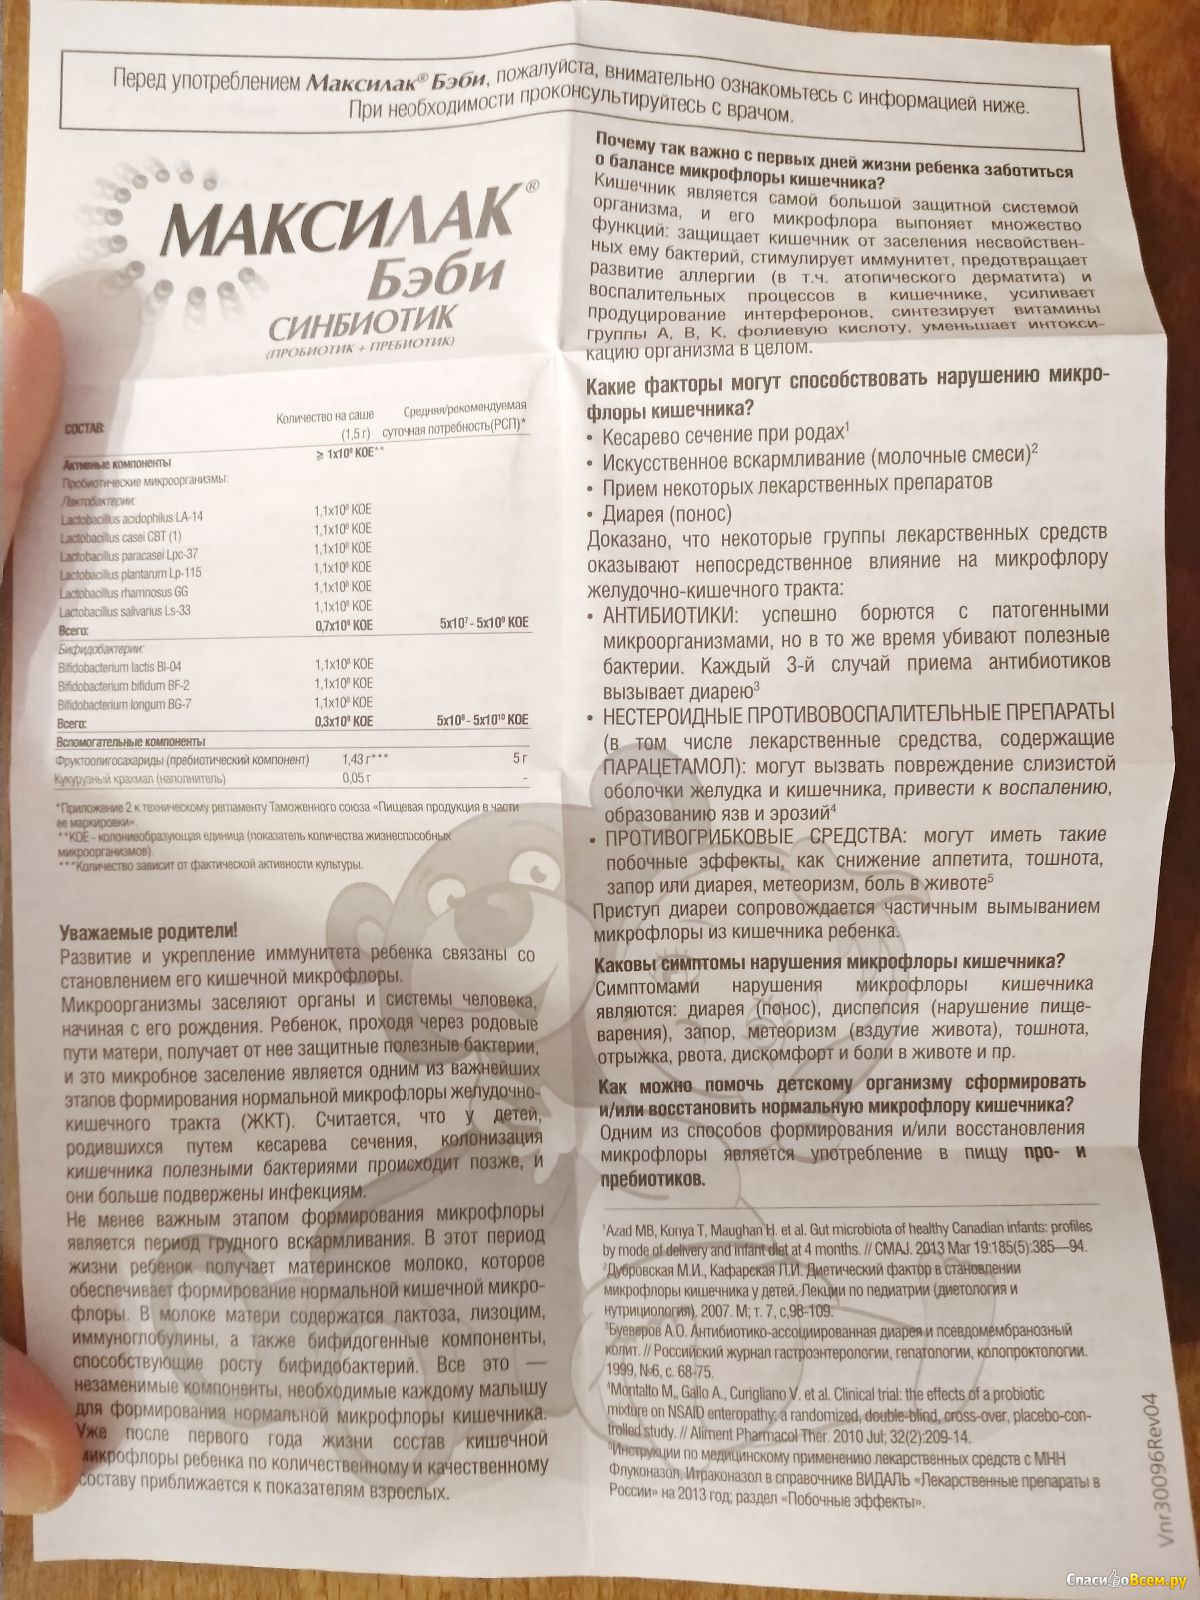 Максилак бэби капли фл.8мл. для нормальной работы кишечника | живая аптека